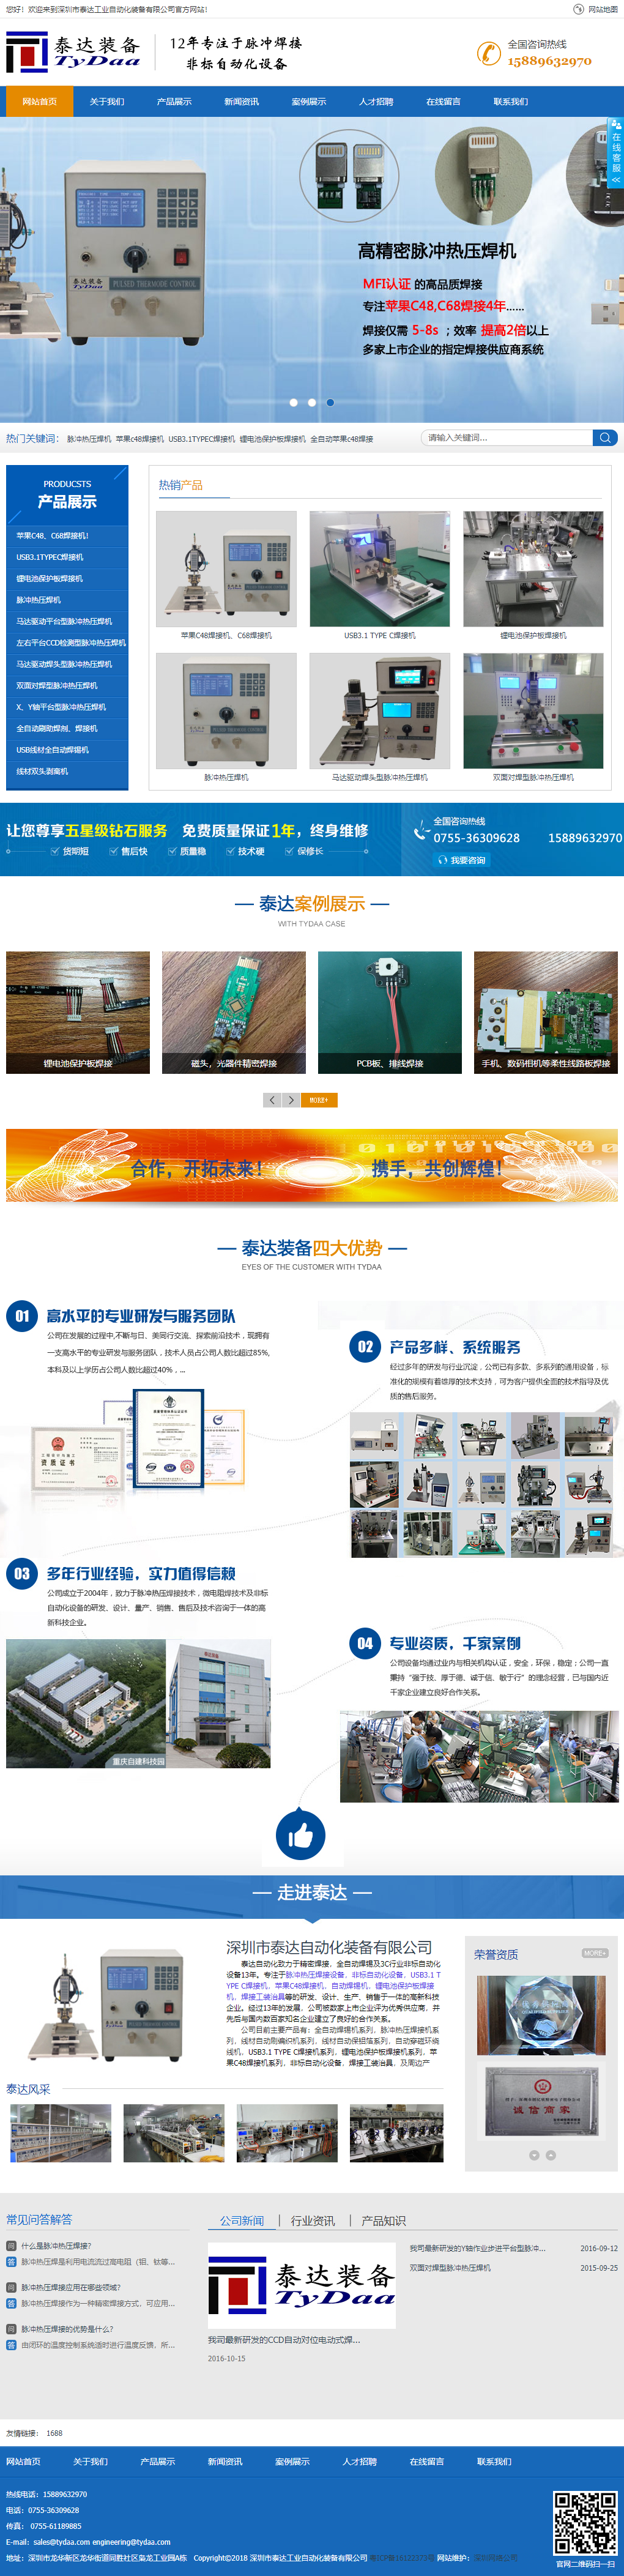 深圳市泰达工业自动化装备有限公司网站案例